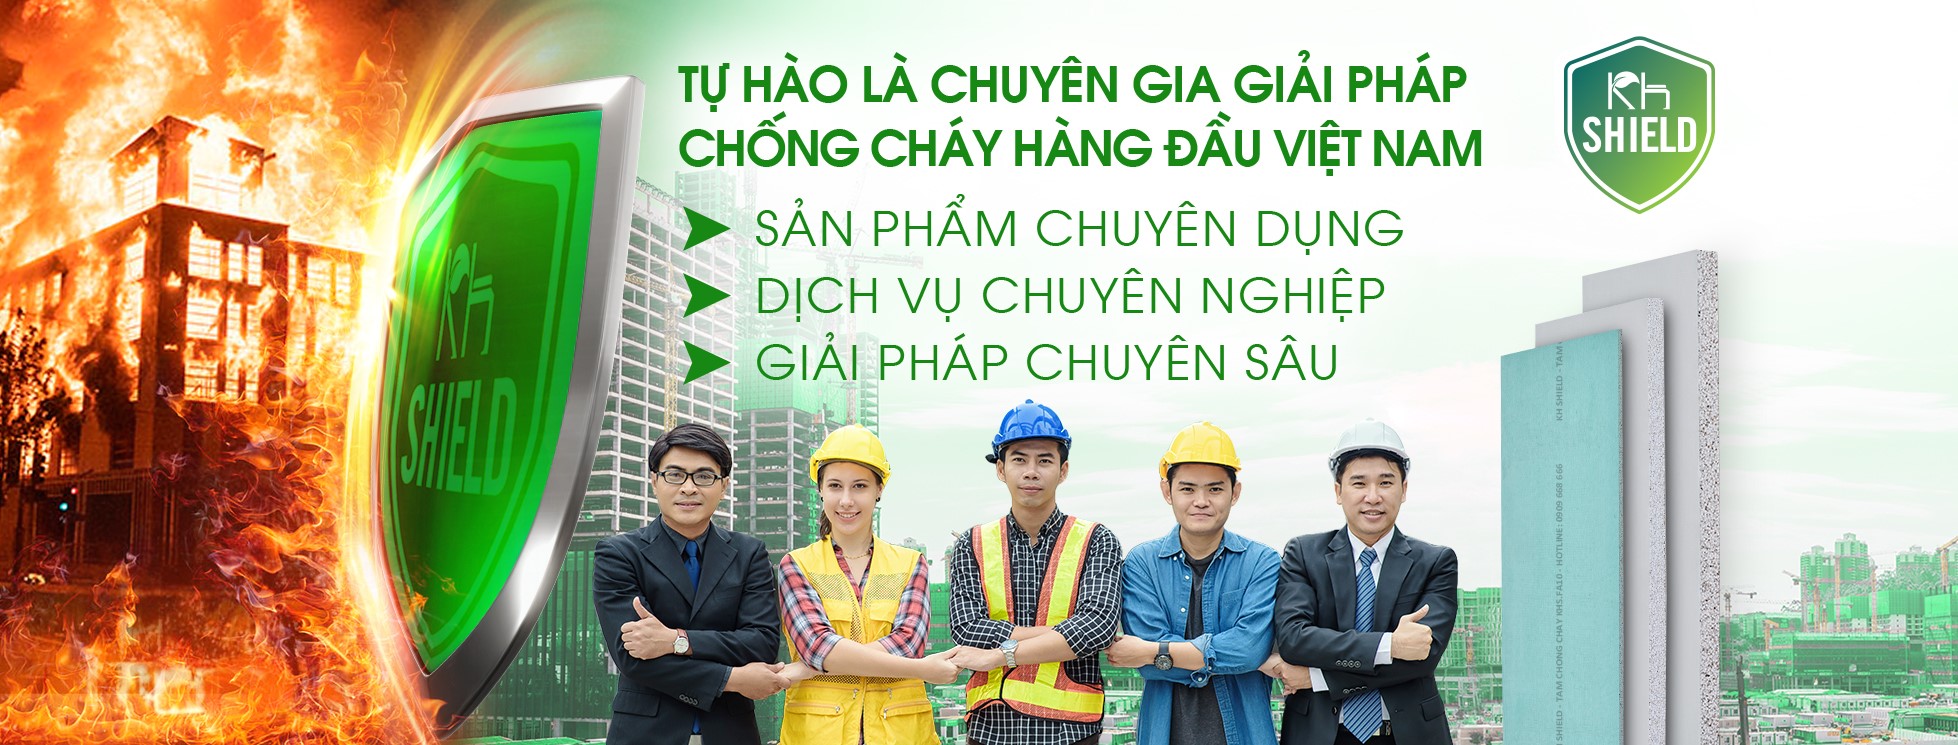 KH Shield  - Tự hào là chuyên gia giải pháp chống cháy hàng đầu Việt Nam